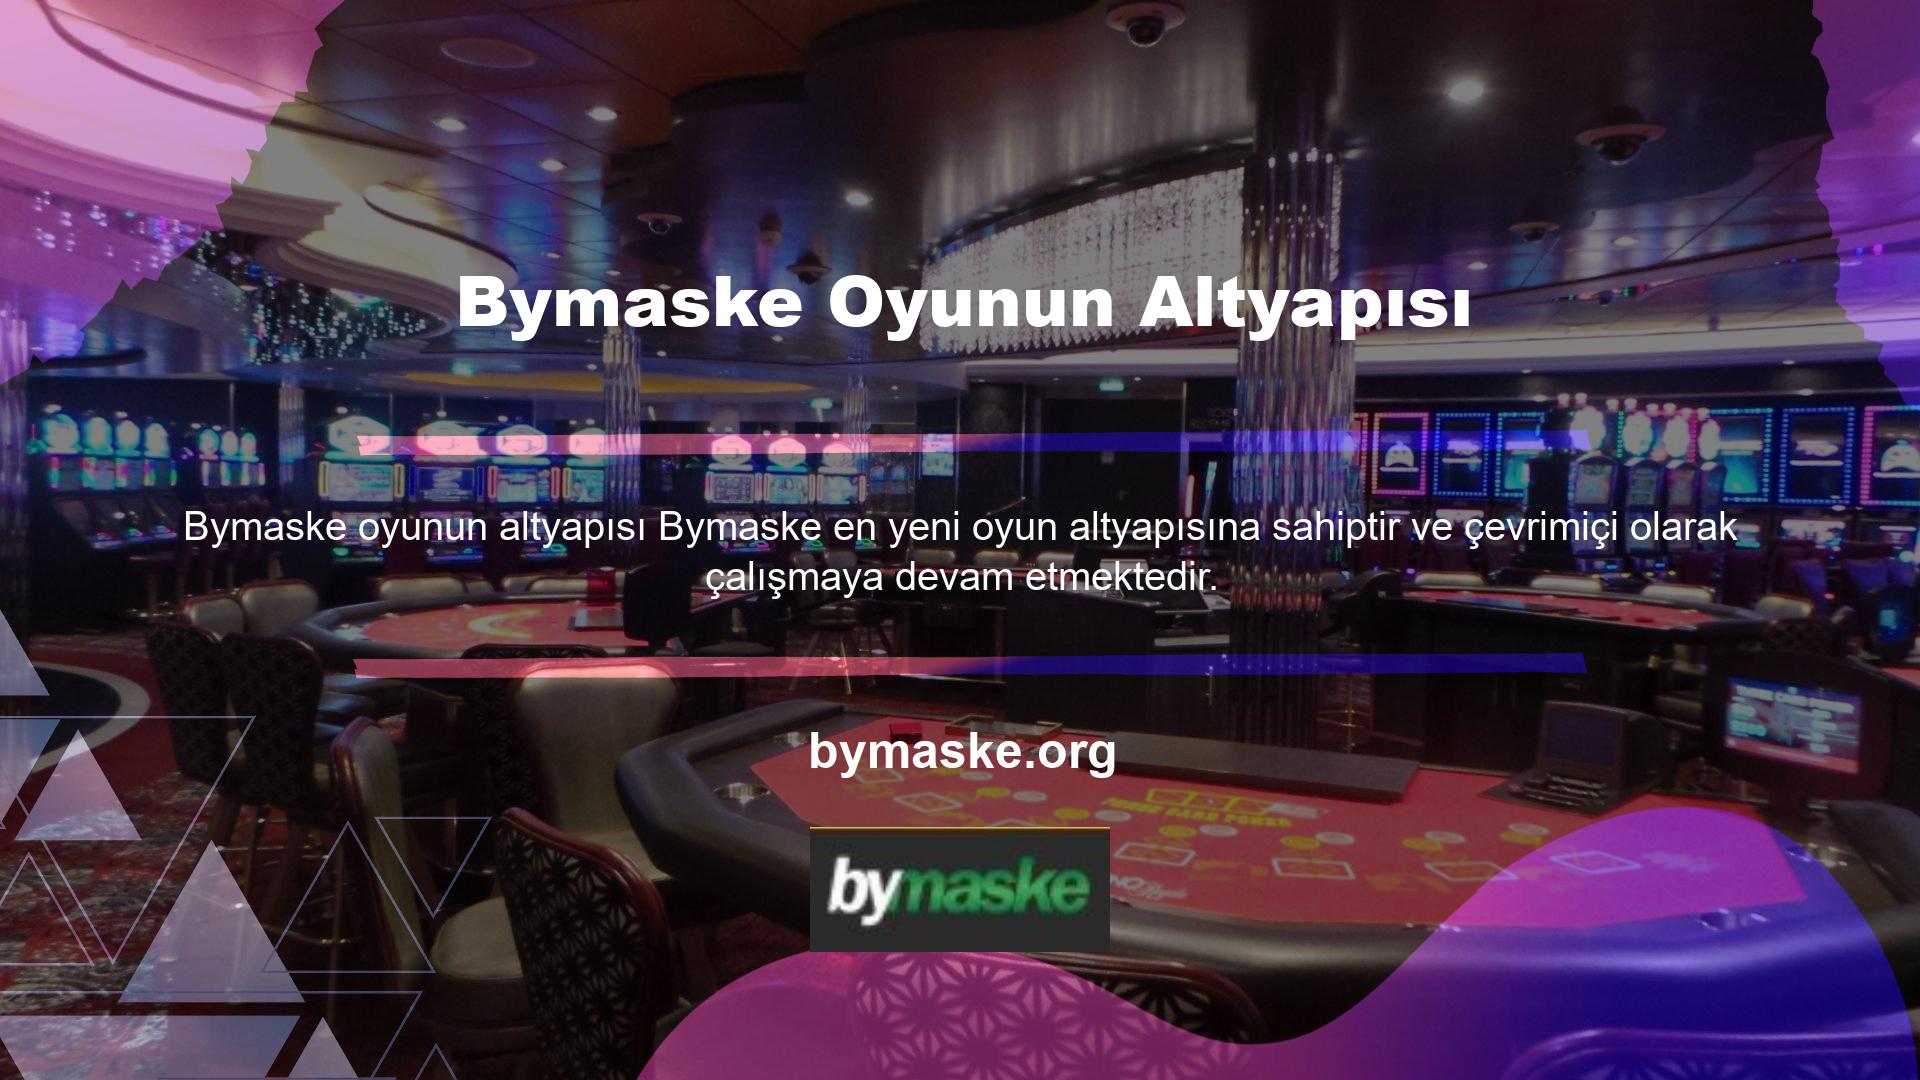 Bymaske, kullanıcılarını oyun deneyimleriyle eğlendiren bir spor ve casino oyun sitesidir